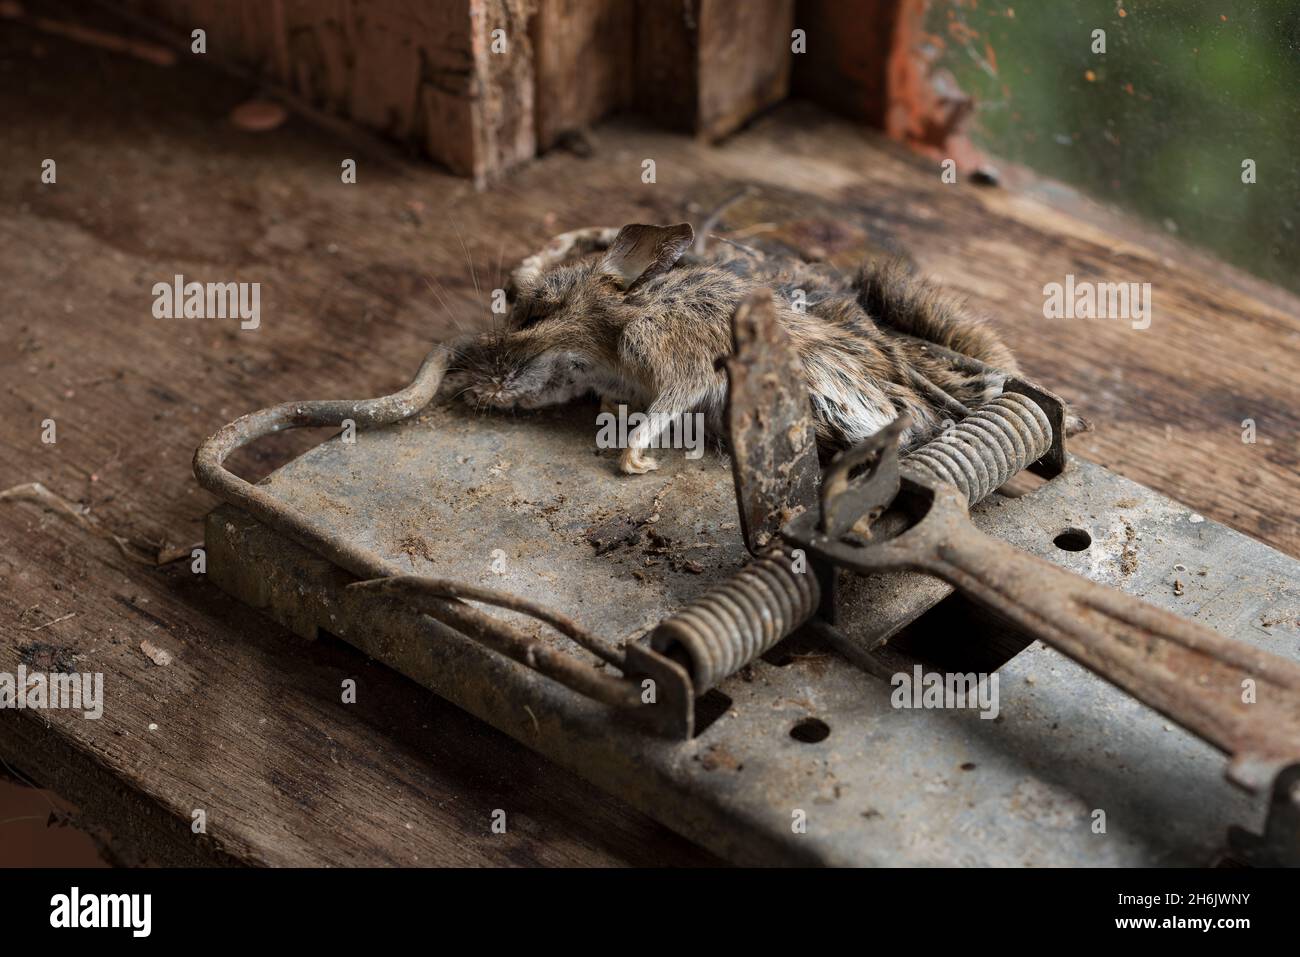 La trappola in metallo per rat per impieghi pesanti ha accidentalmente catturato un piccolo topo in legno di roditori, Apodemus sylvaticus, sotto l'attaccante Foto Stock